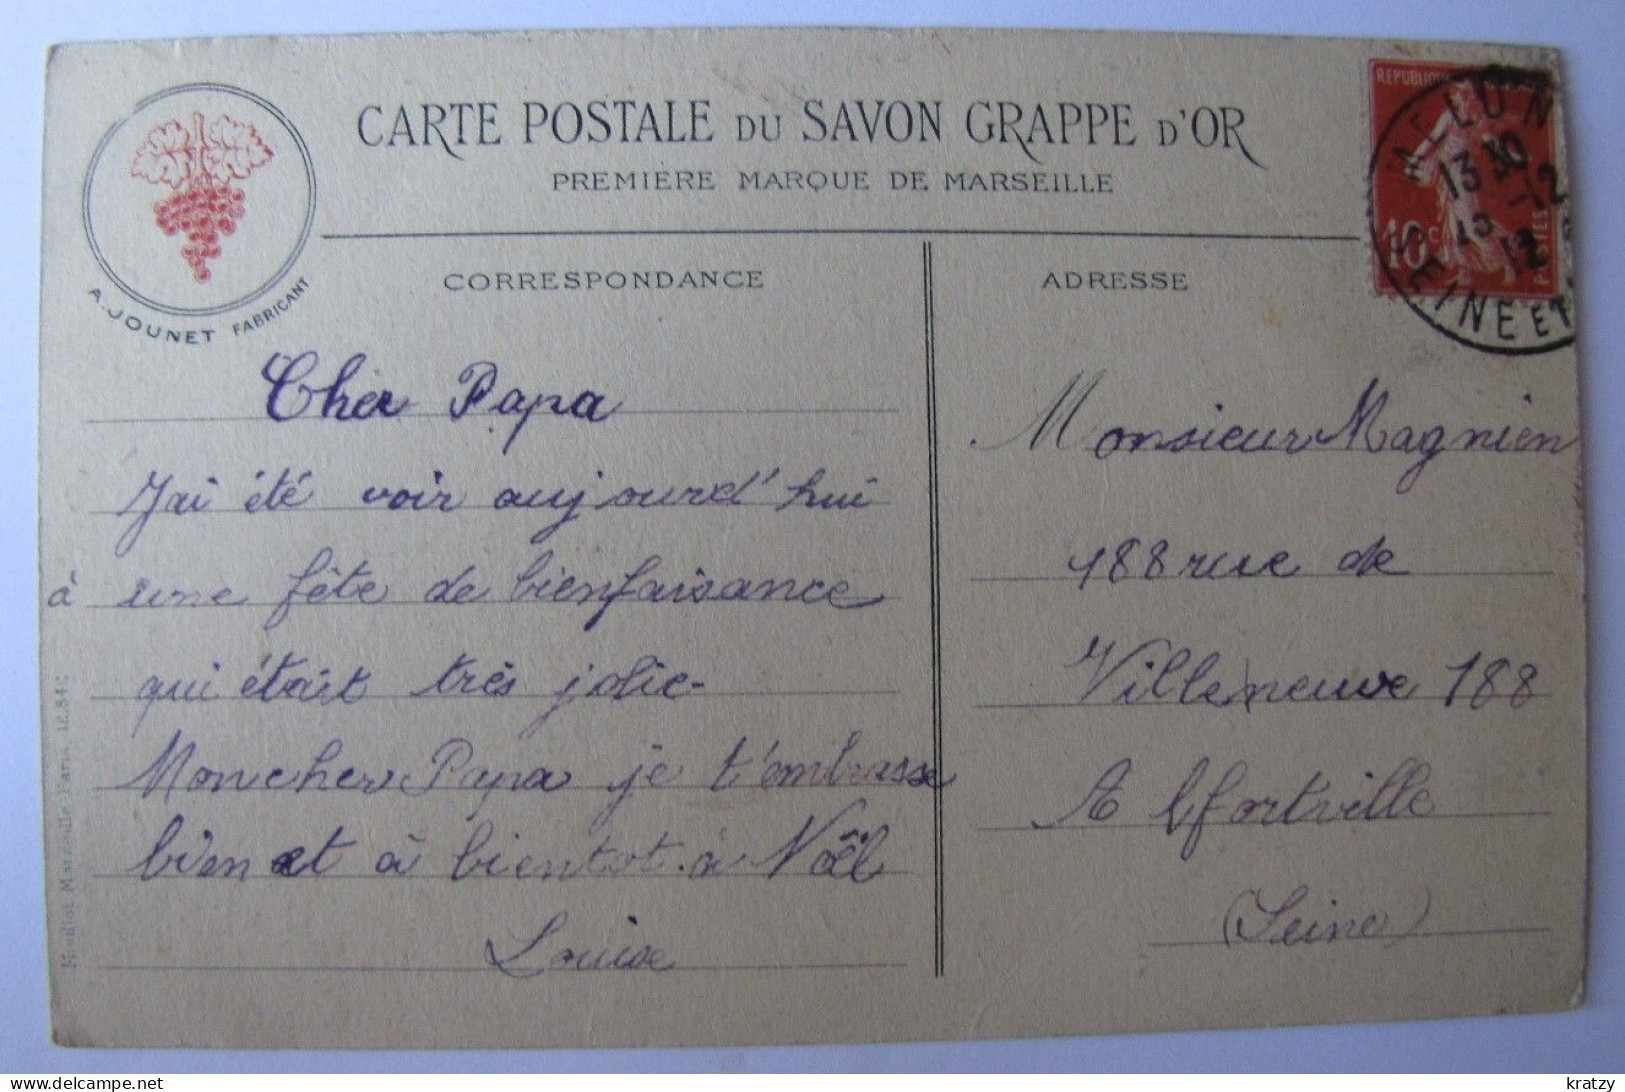 FRANCE - BOUCHES-DU-RHÔNE - MARSEILLE - La Joliette Et La Cathédrale (carte Postale Du Savon Grappe D'Or) - 1912 - Joliette, Port Area